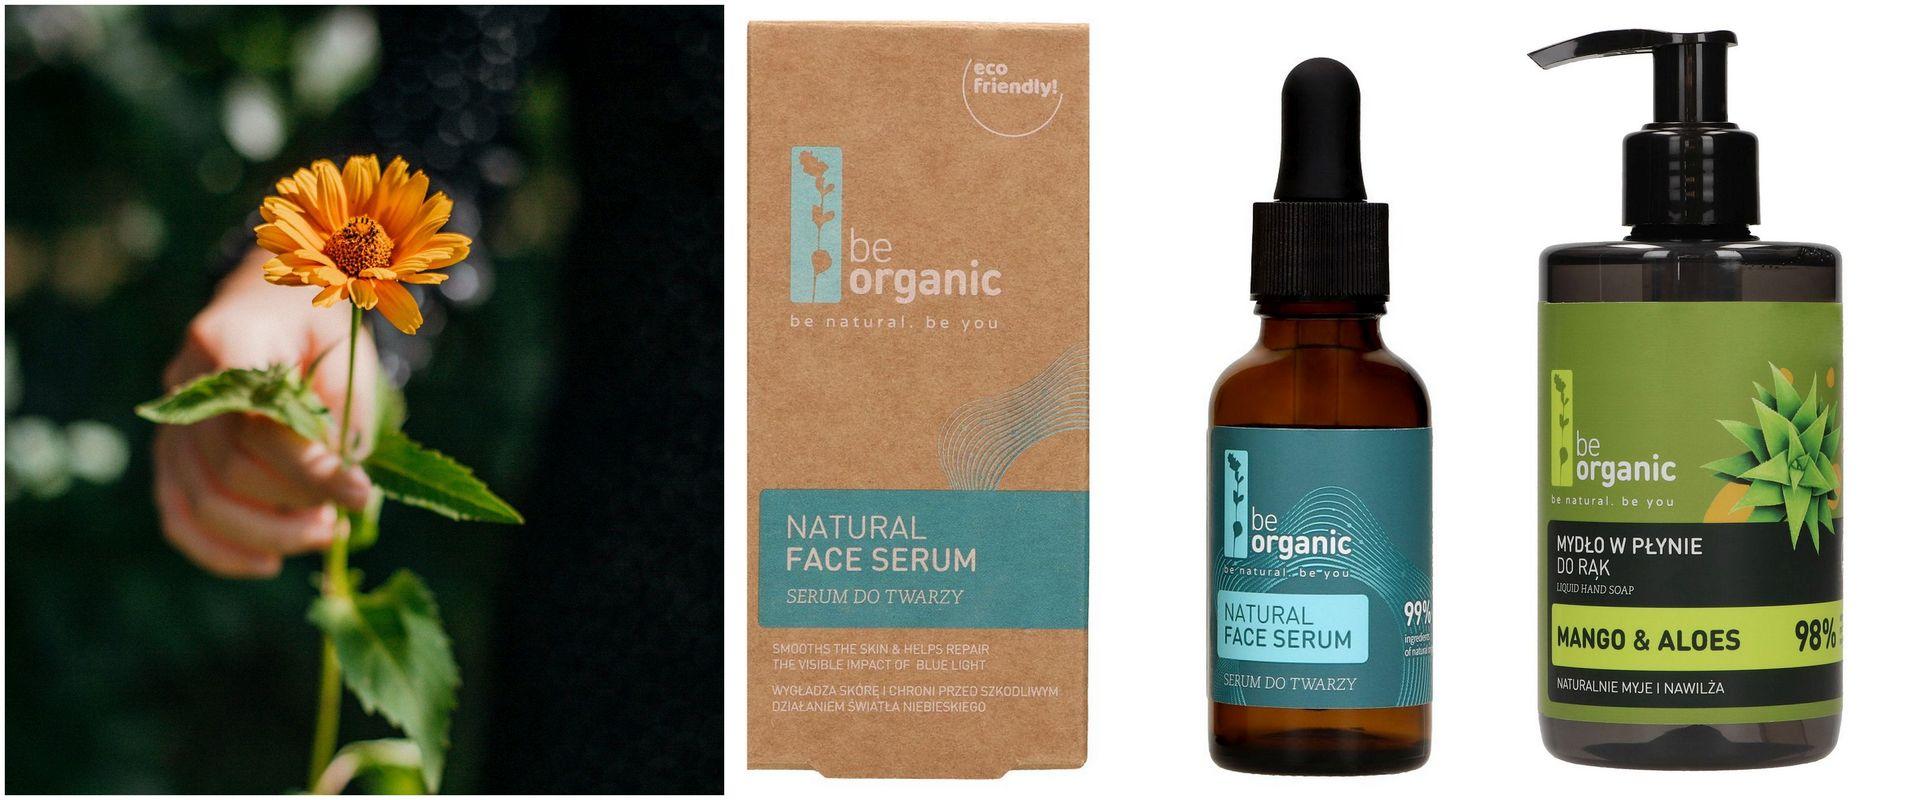 Naturalne serum do twarzy i mydło w płynie - nowe produkty w portfolio Be Organic